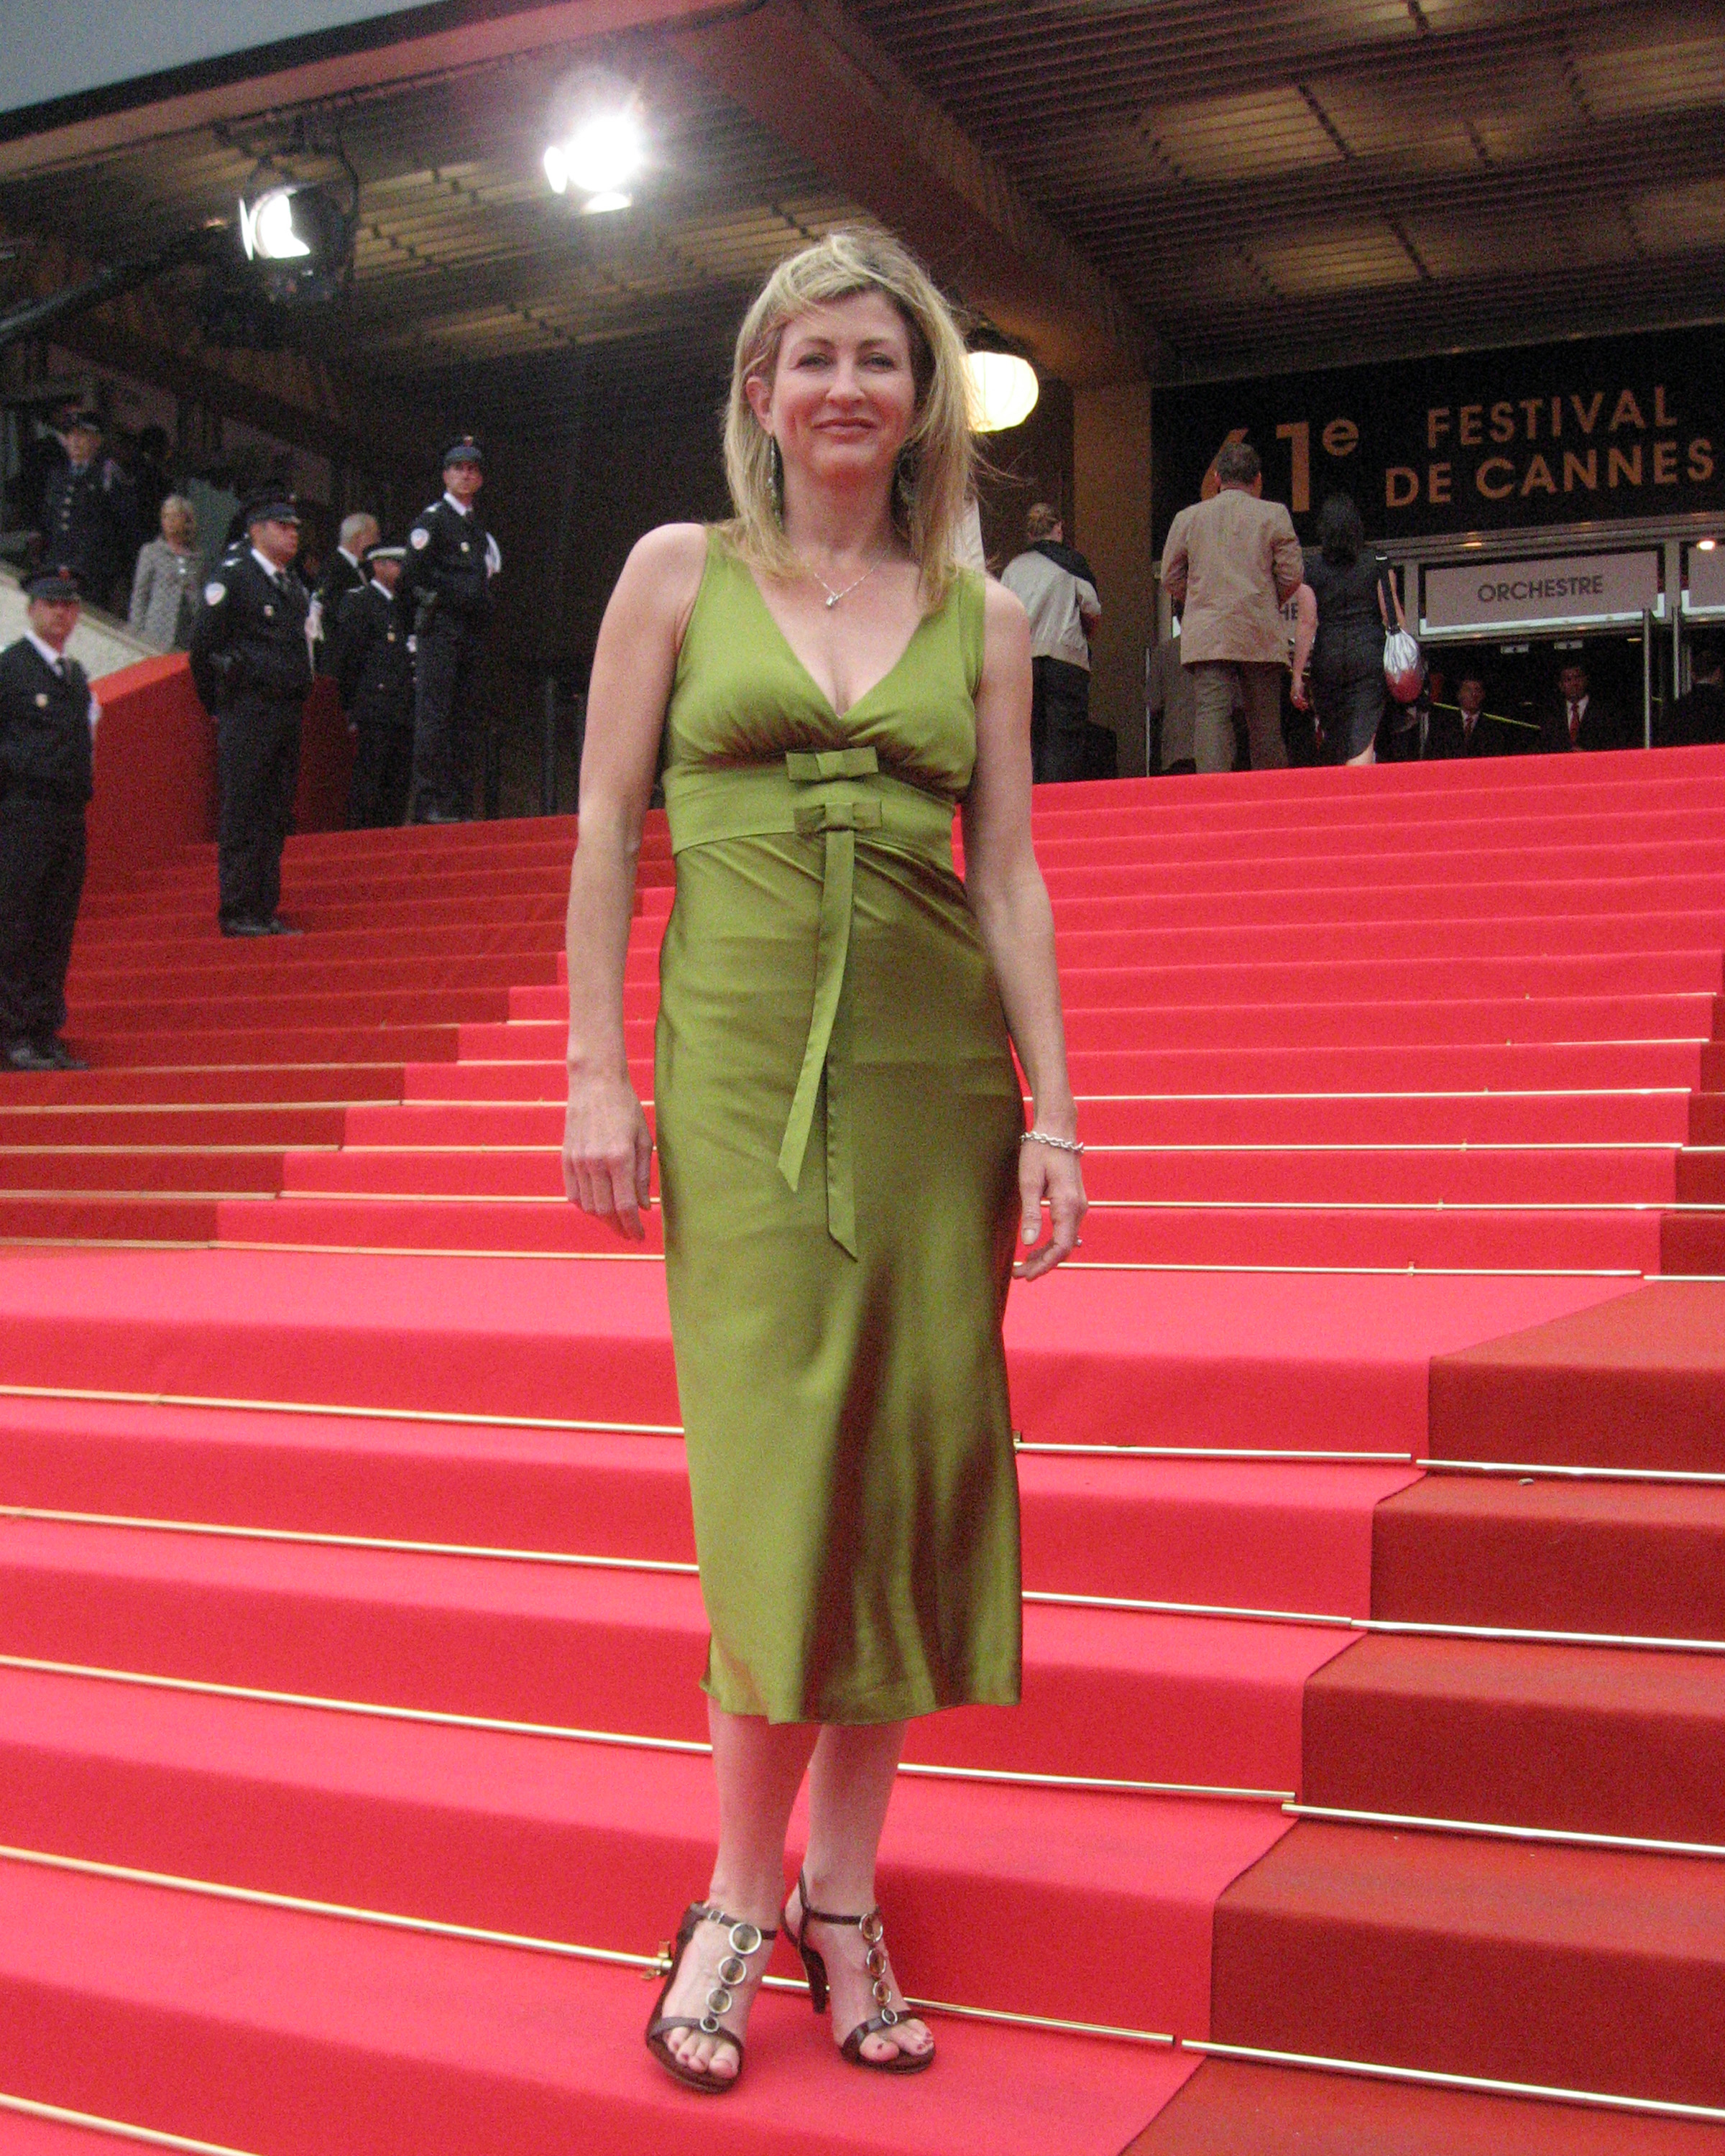 61st Fesival de Cannes, 2008